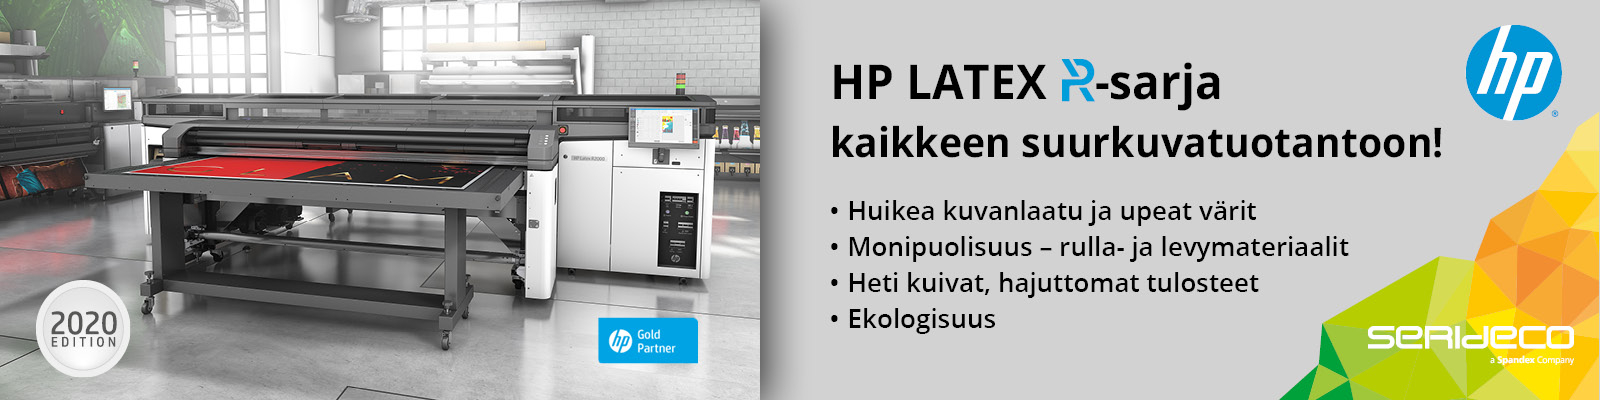 HP Latex R-sarja kaikkeen suurkuvatuotantoon